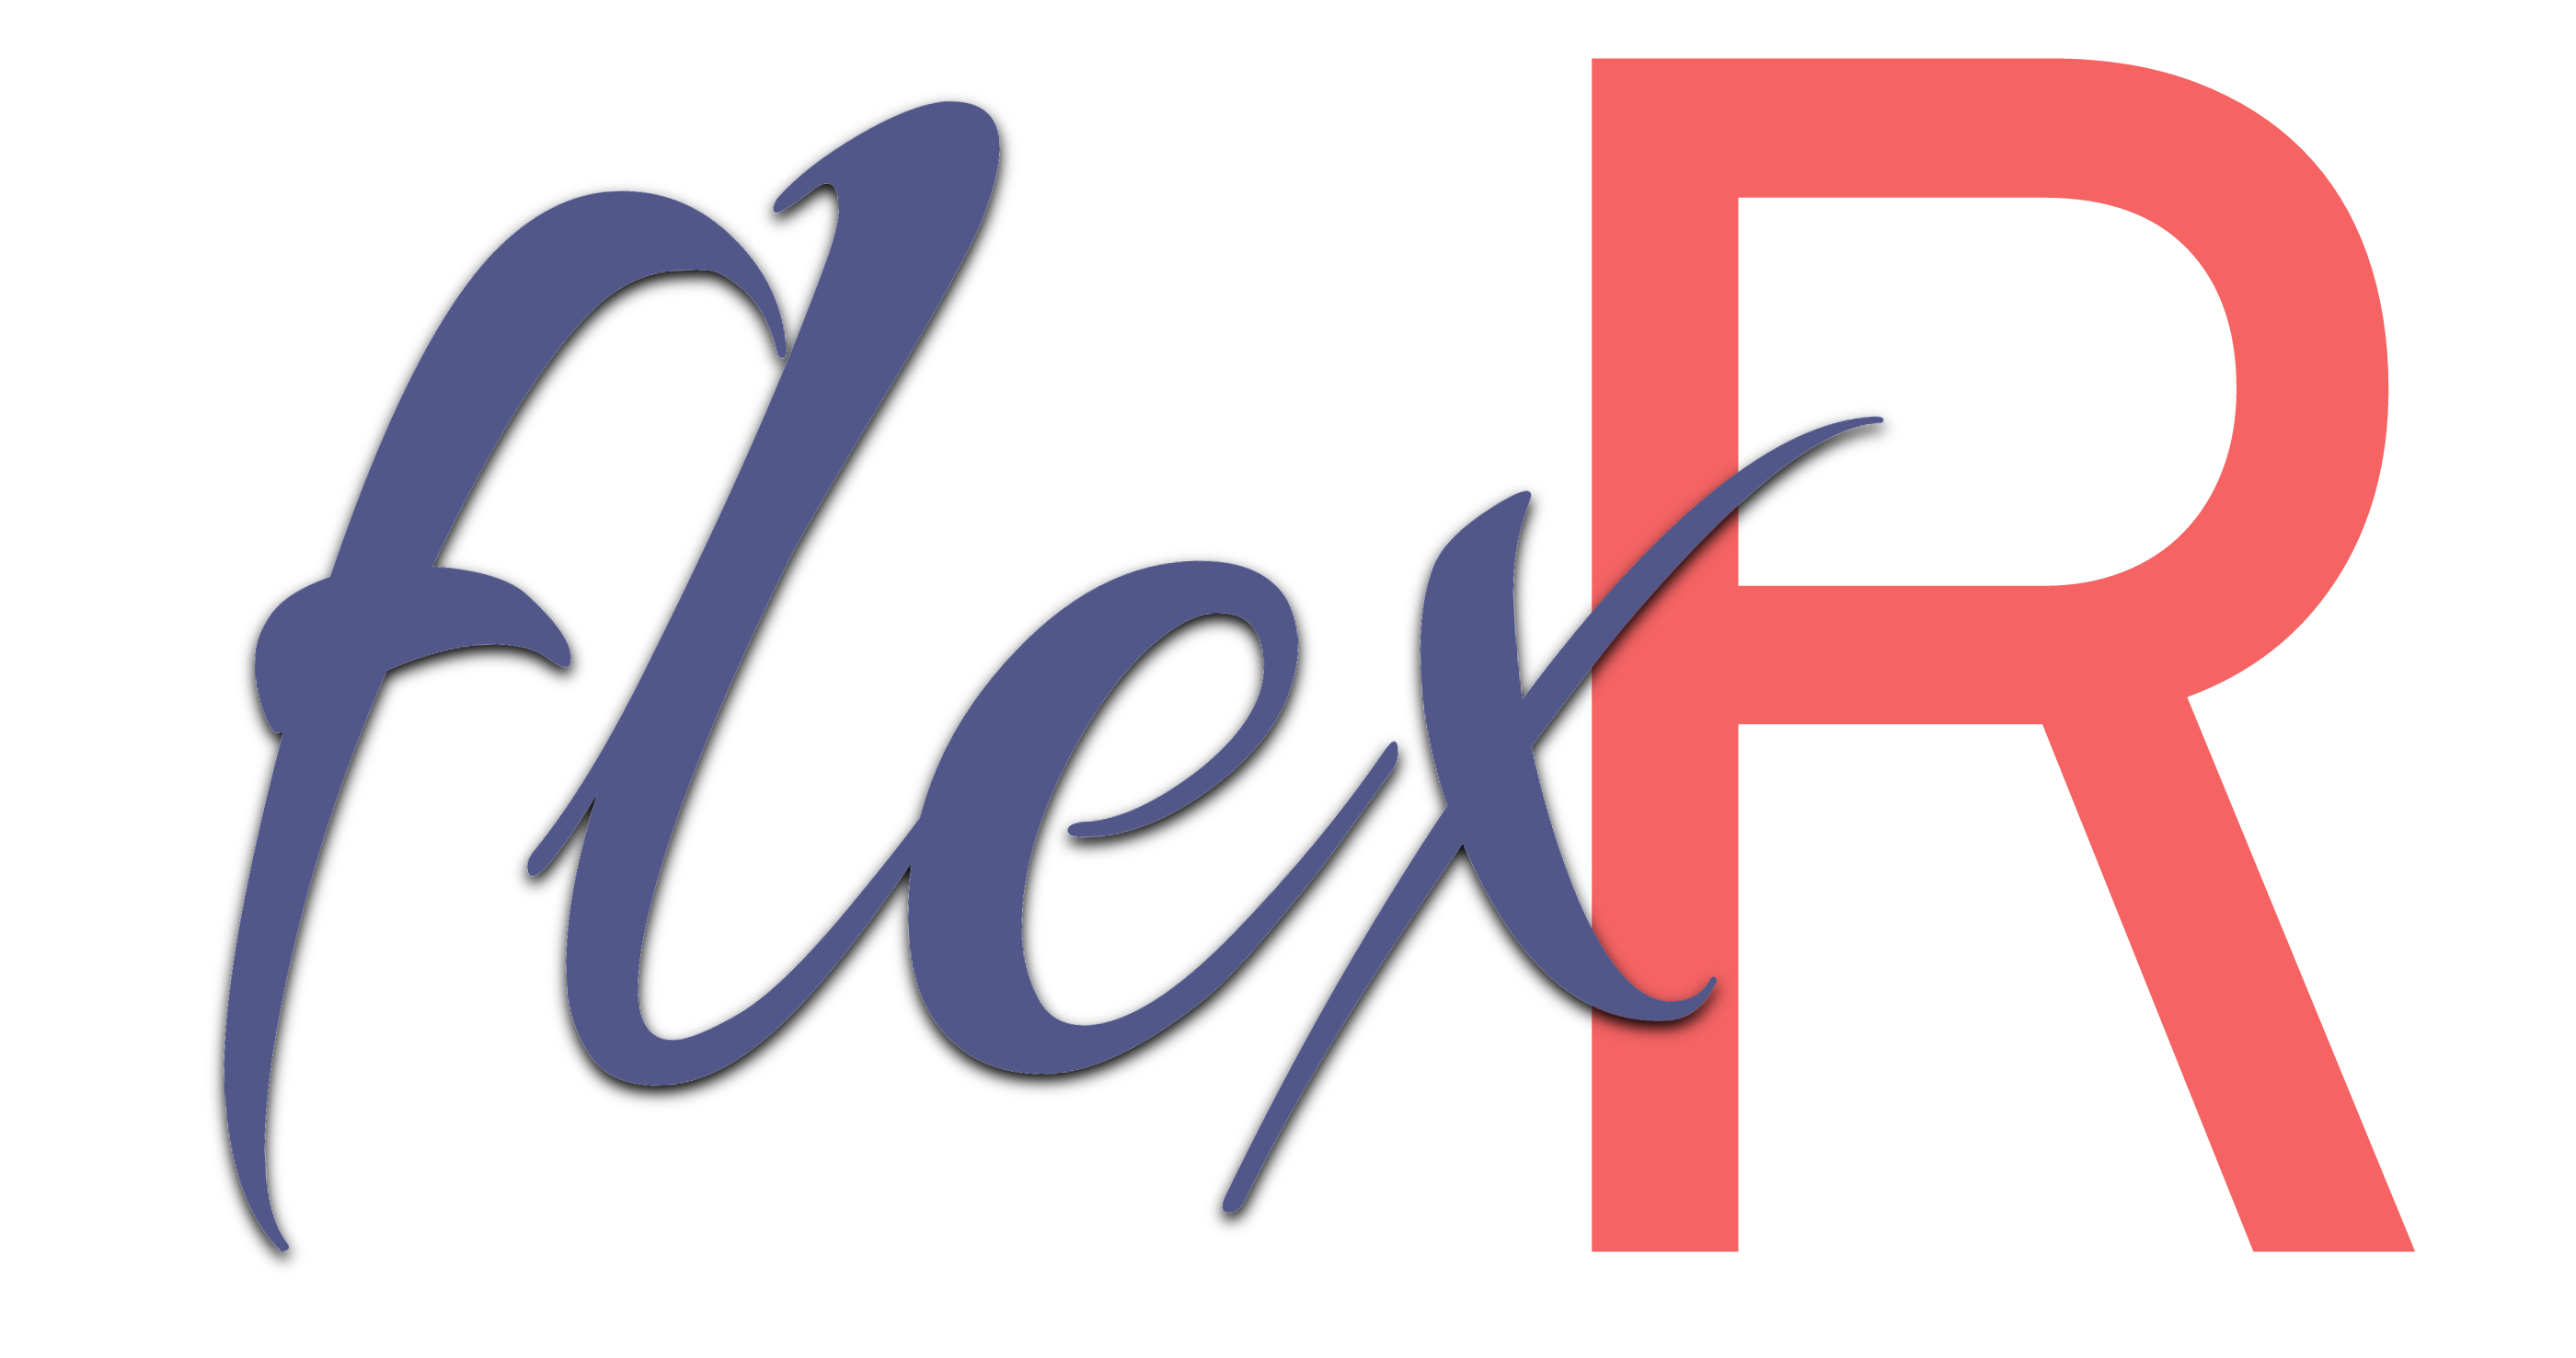 flexr